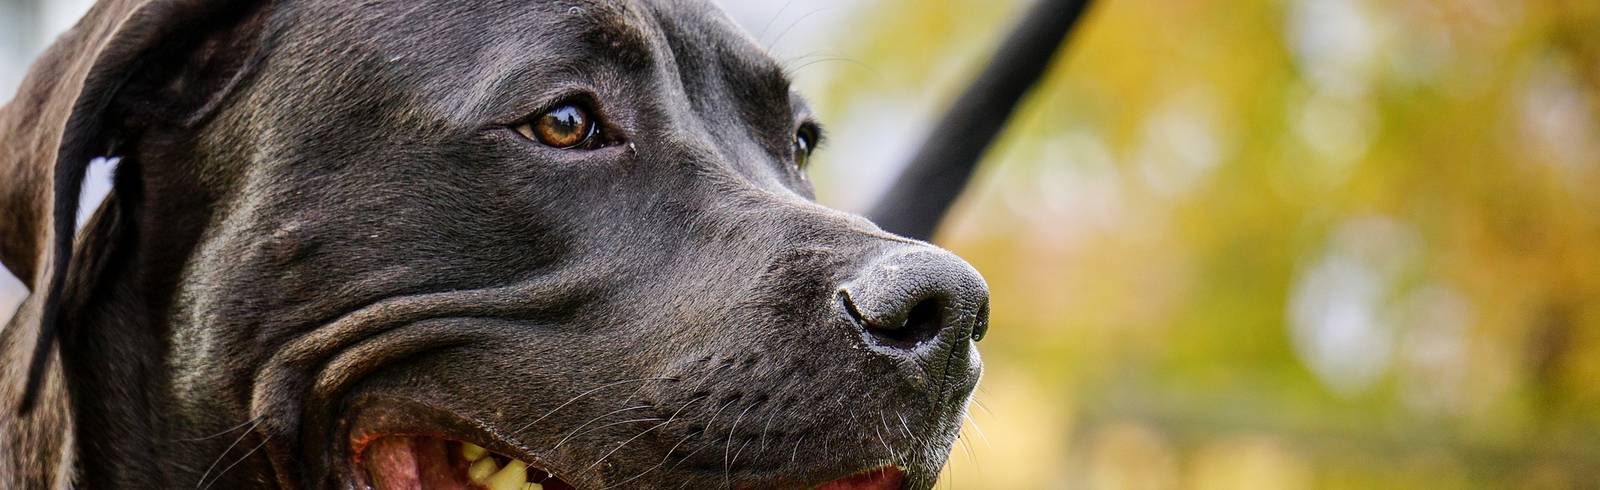 Wien prüft Alko-Limit für Kampfhundehalter